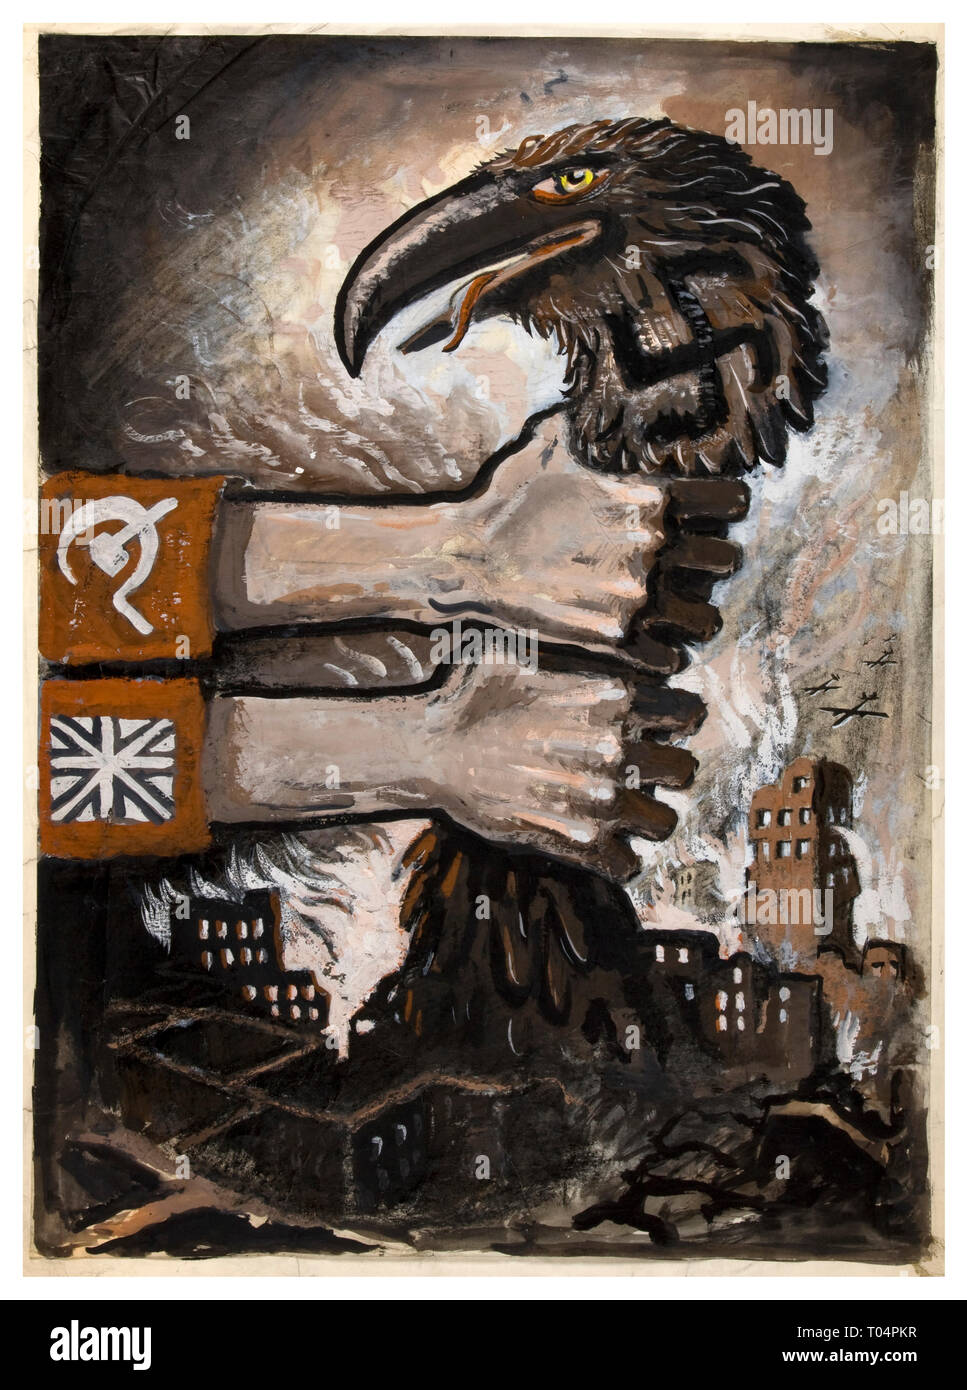 Cartel propagandístico Vintage WW2 las Potencias Aliadas soviéticas y estrangulando la unidad británica de la esvástica depredadora vistiendo Alemania hawk-como medio de aves ruinas de la Alemania nazi en 1940. Foto de stock